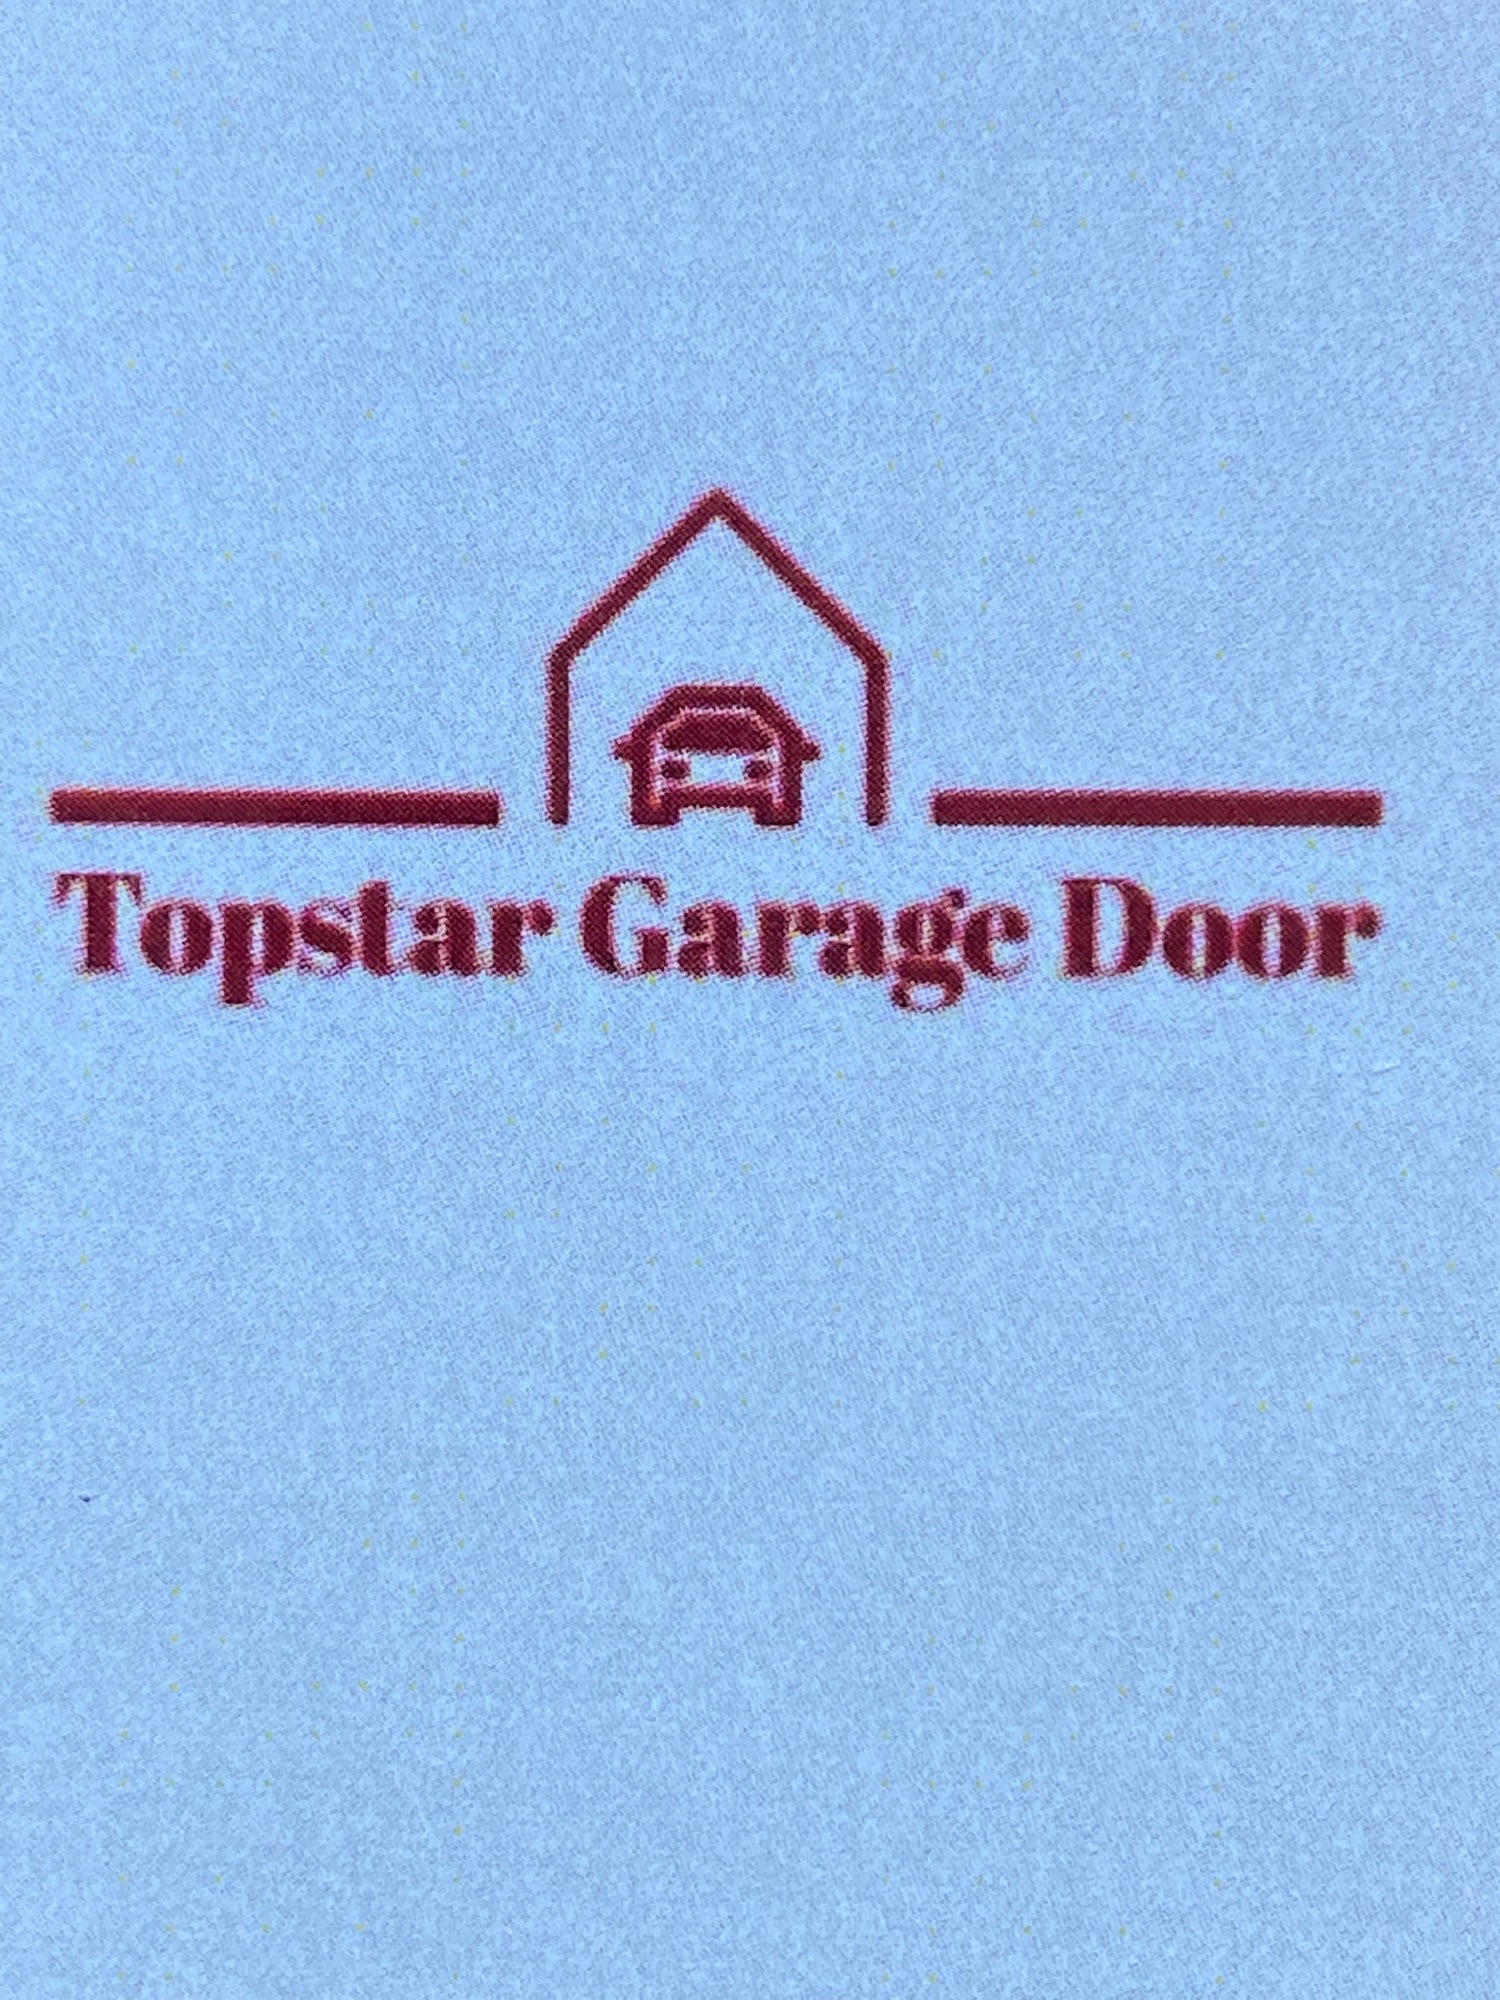 Top Star Garage Door Services, LLC Logo